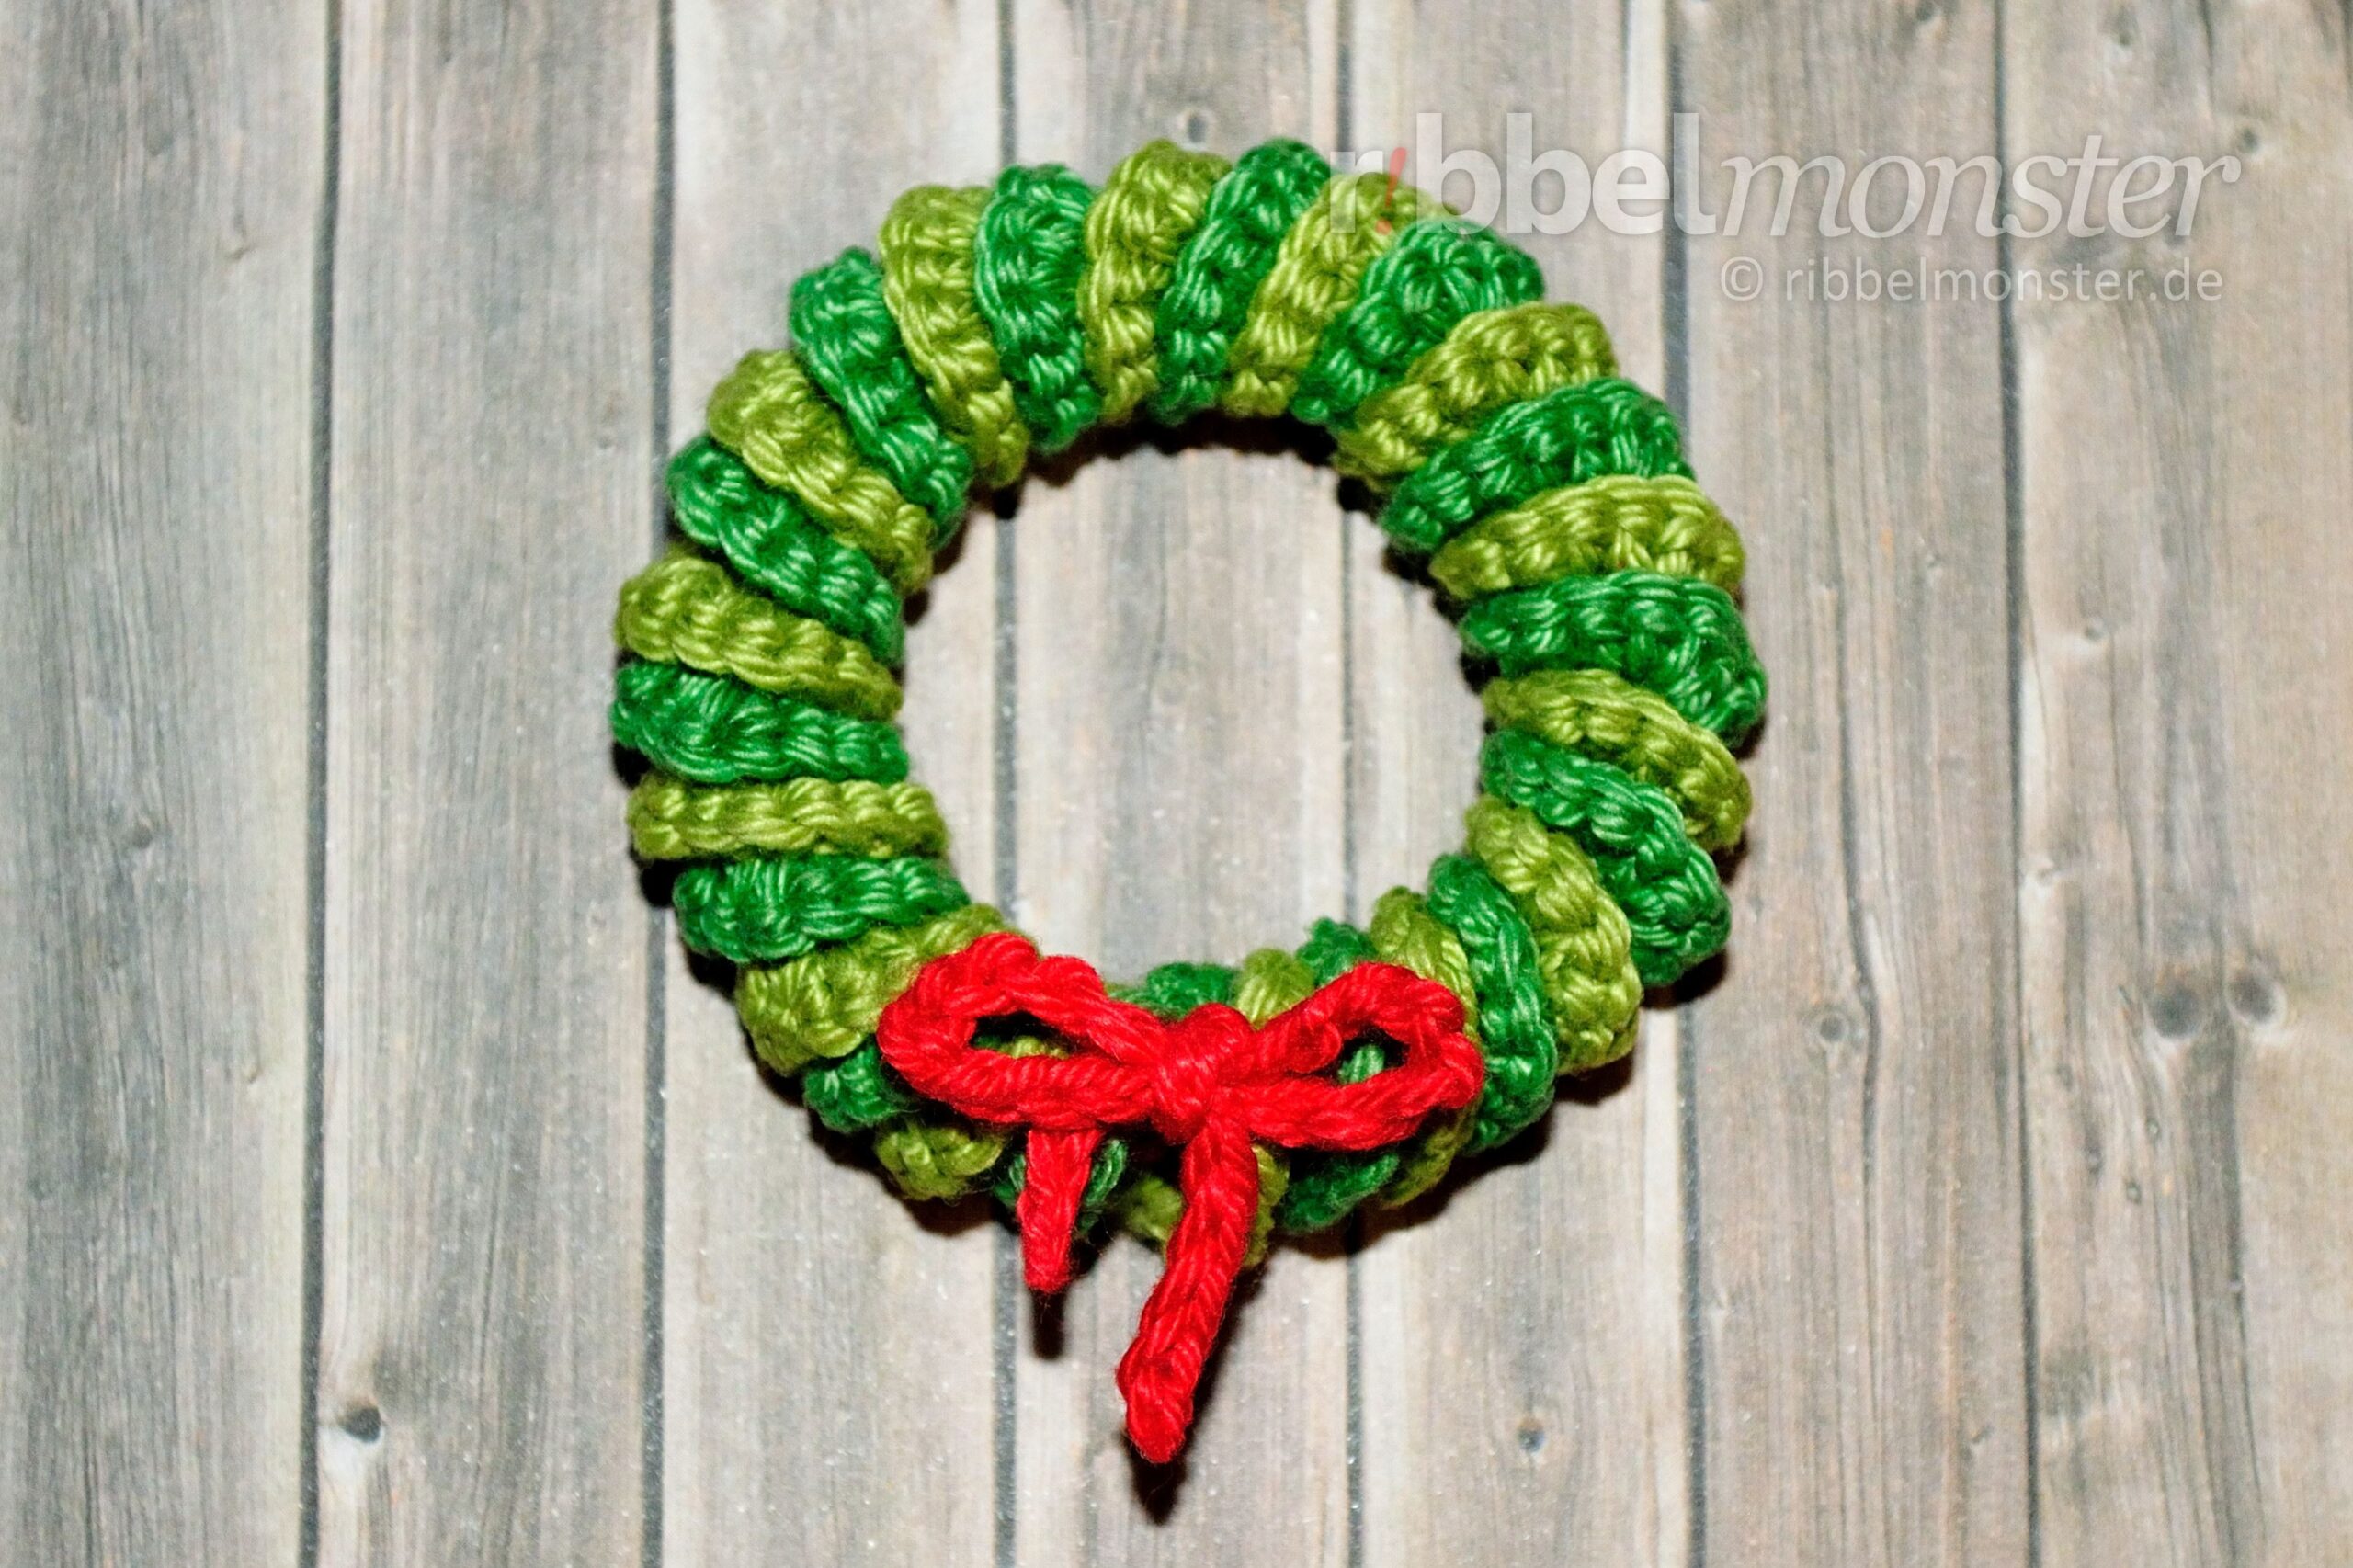 Amigurumi – Crochet Wreath